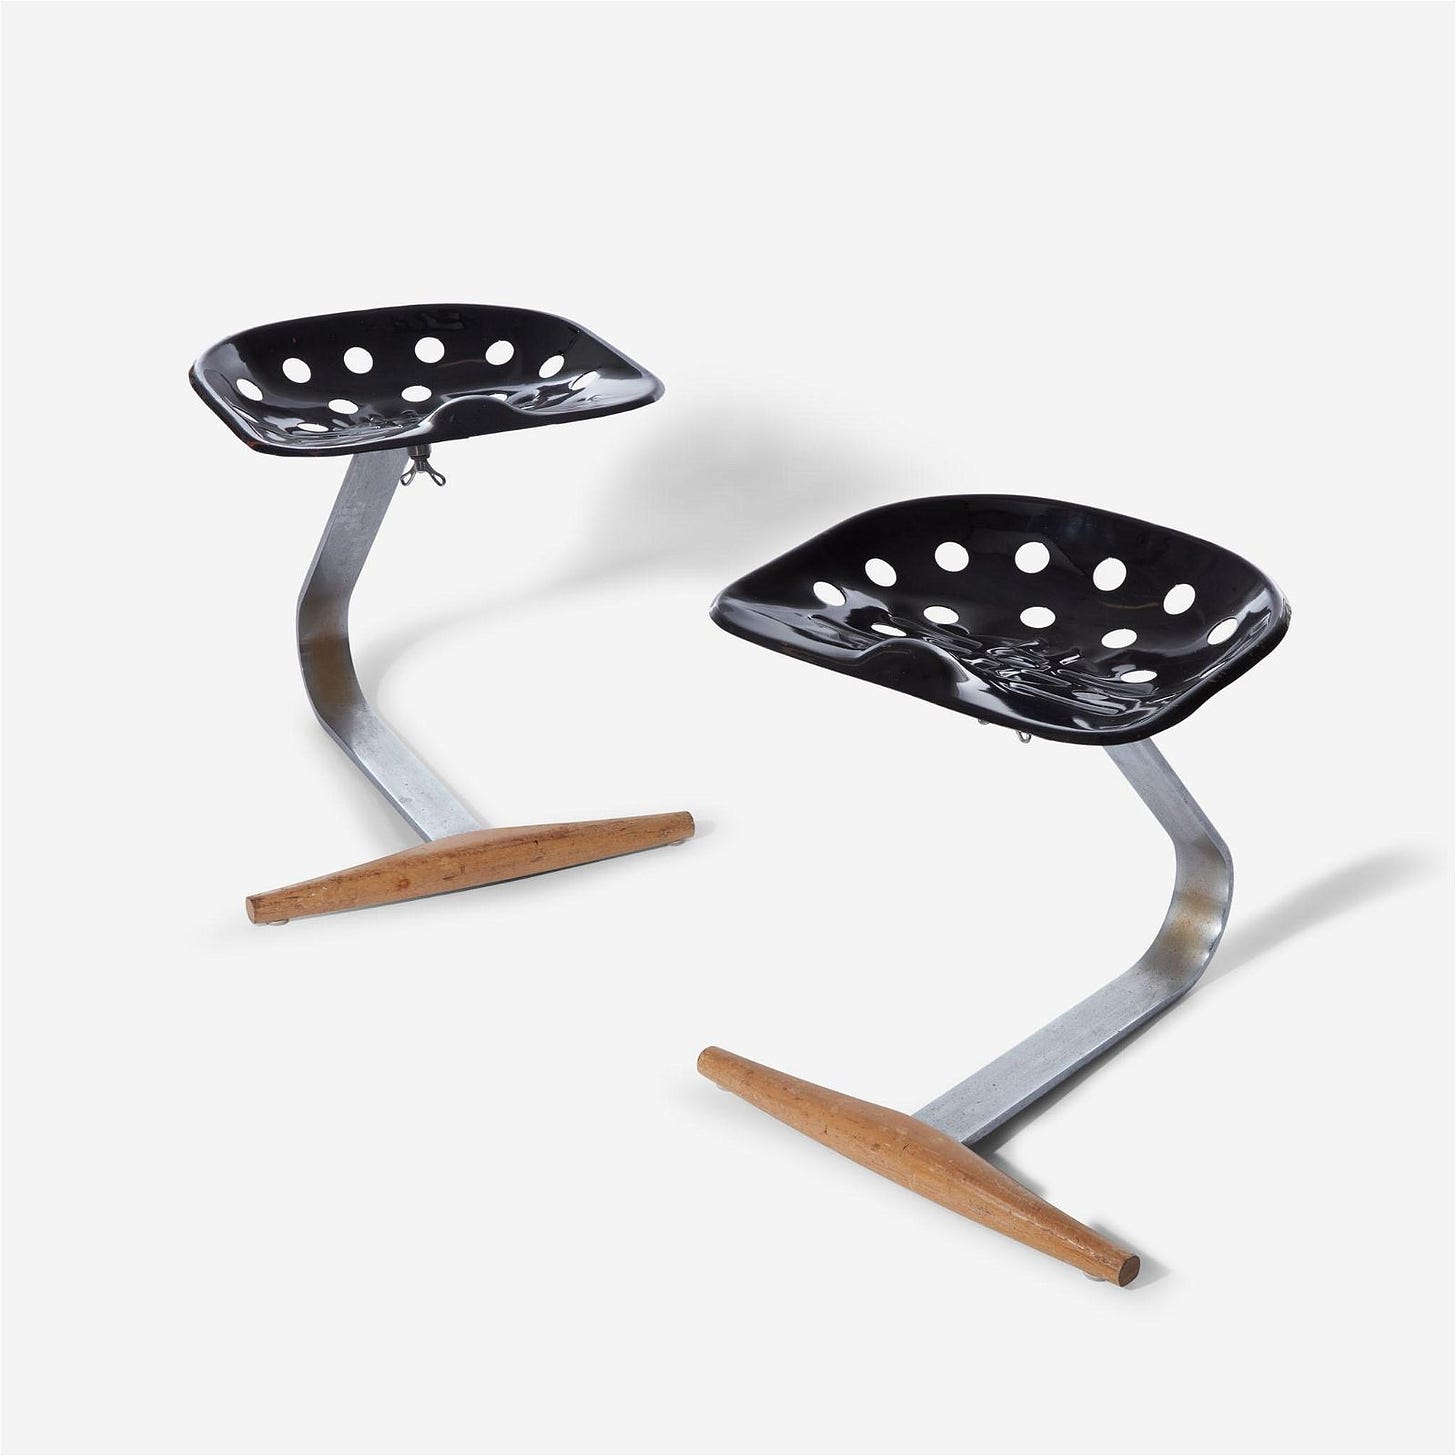 Achille and Pier Giacomo Castiglioni A Pair of "Mezzadro" stools, Zanotta, Italy, designed 1957, the